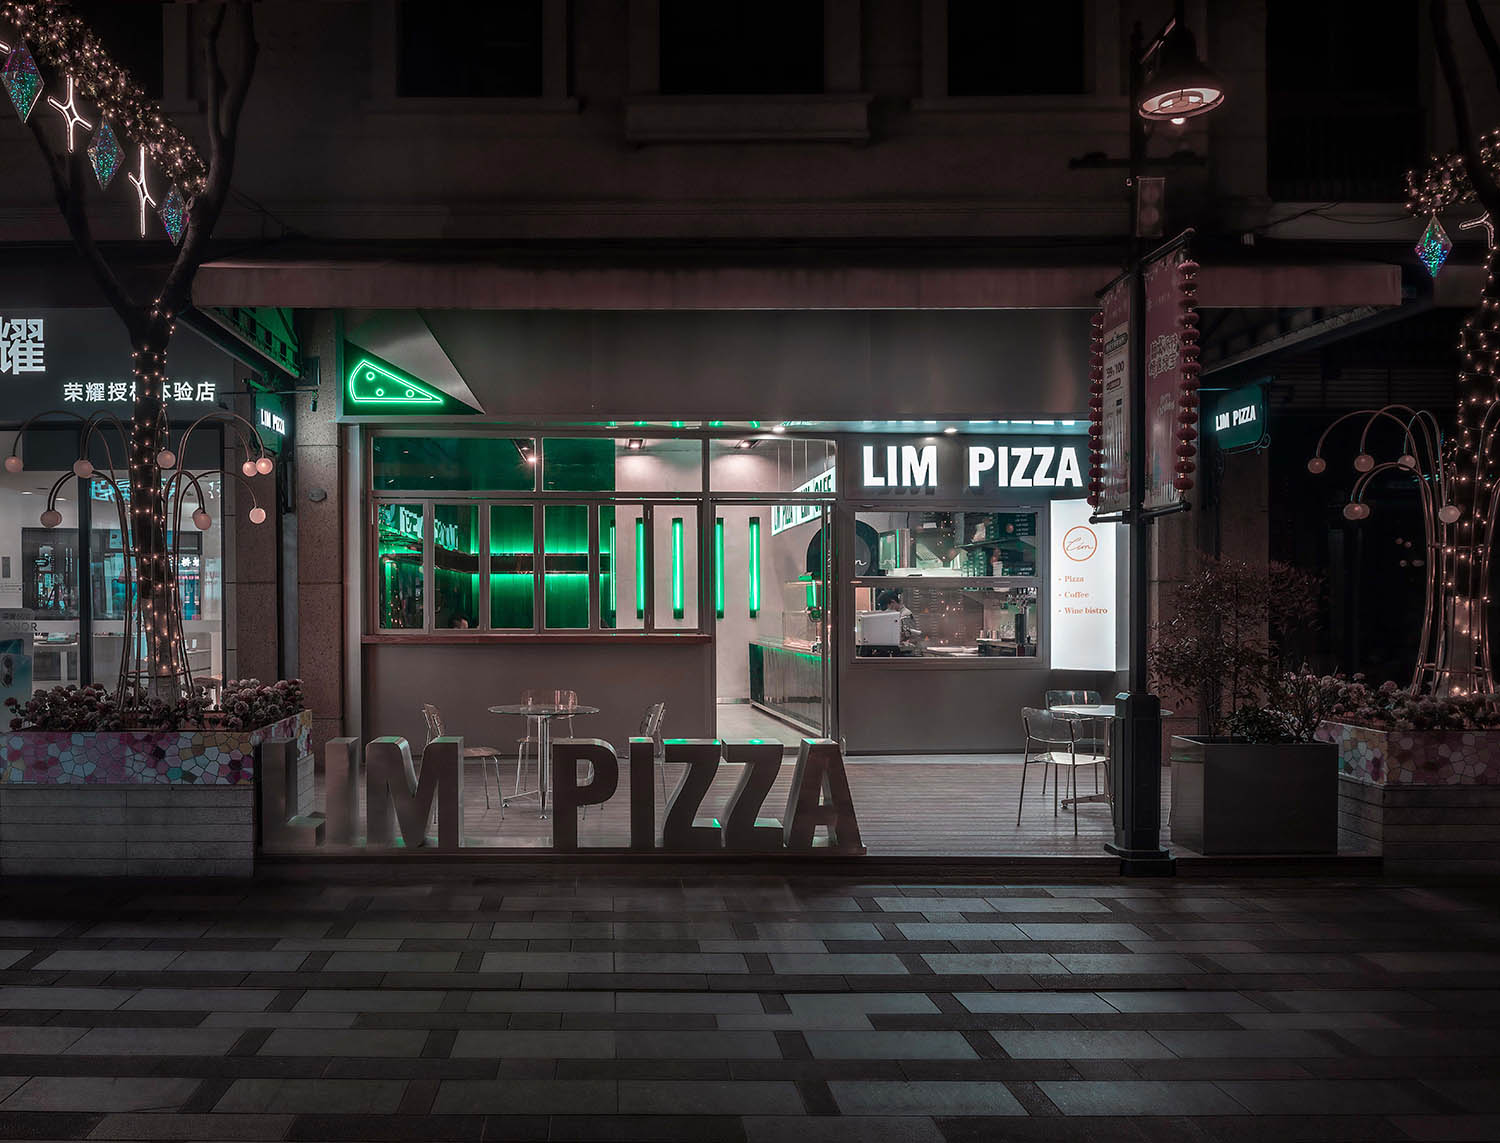 LIM PIZZA店,蘇州披薩店設計,餐廳設計,網紅披薩店設計,披薩店設計案例,PIZZA店設計,蘇州網紅店設計,平介設計,Parallect-design